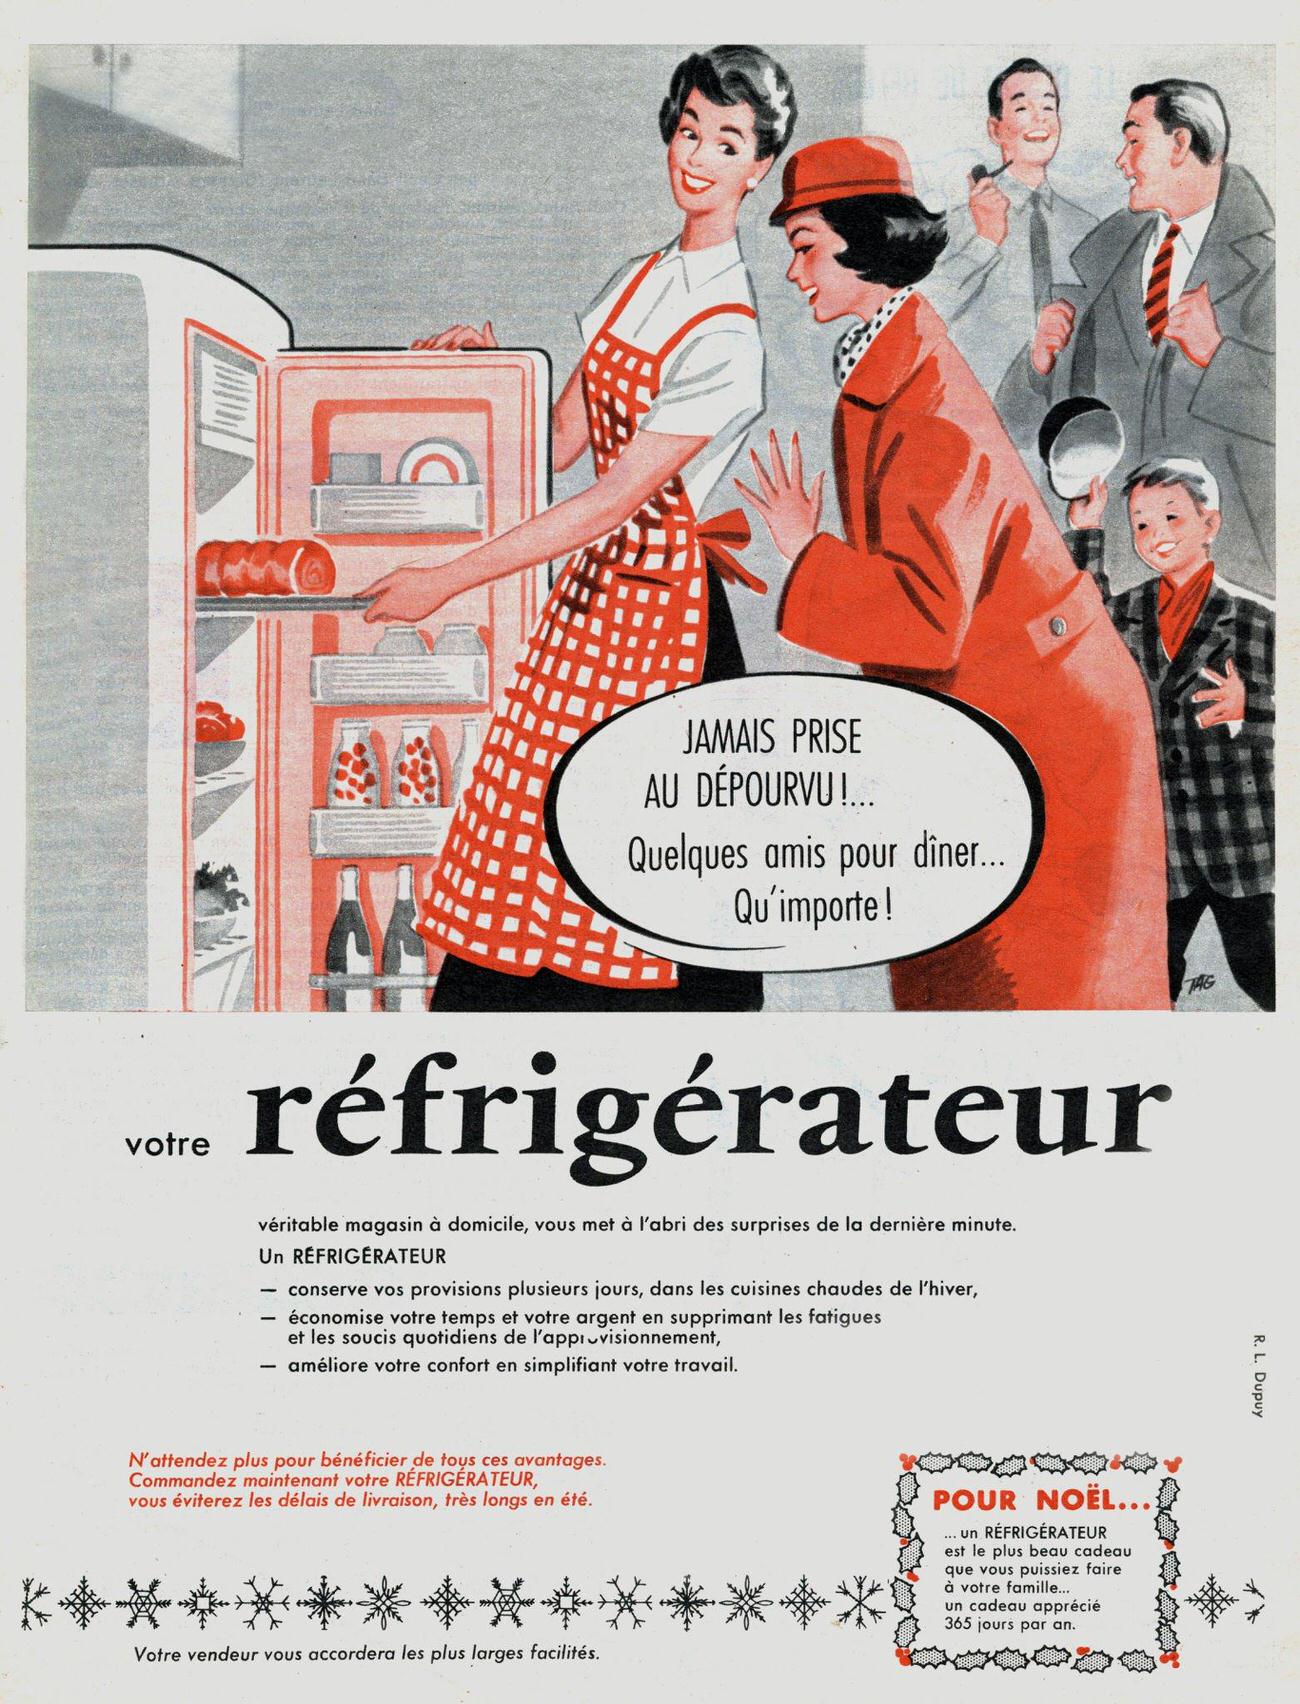 Refrigerator ad, November 1957.